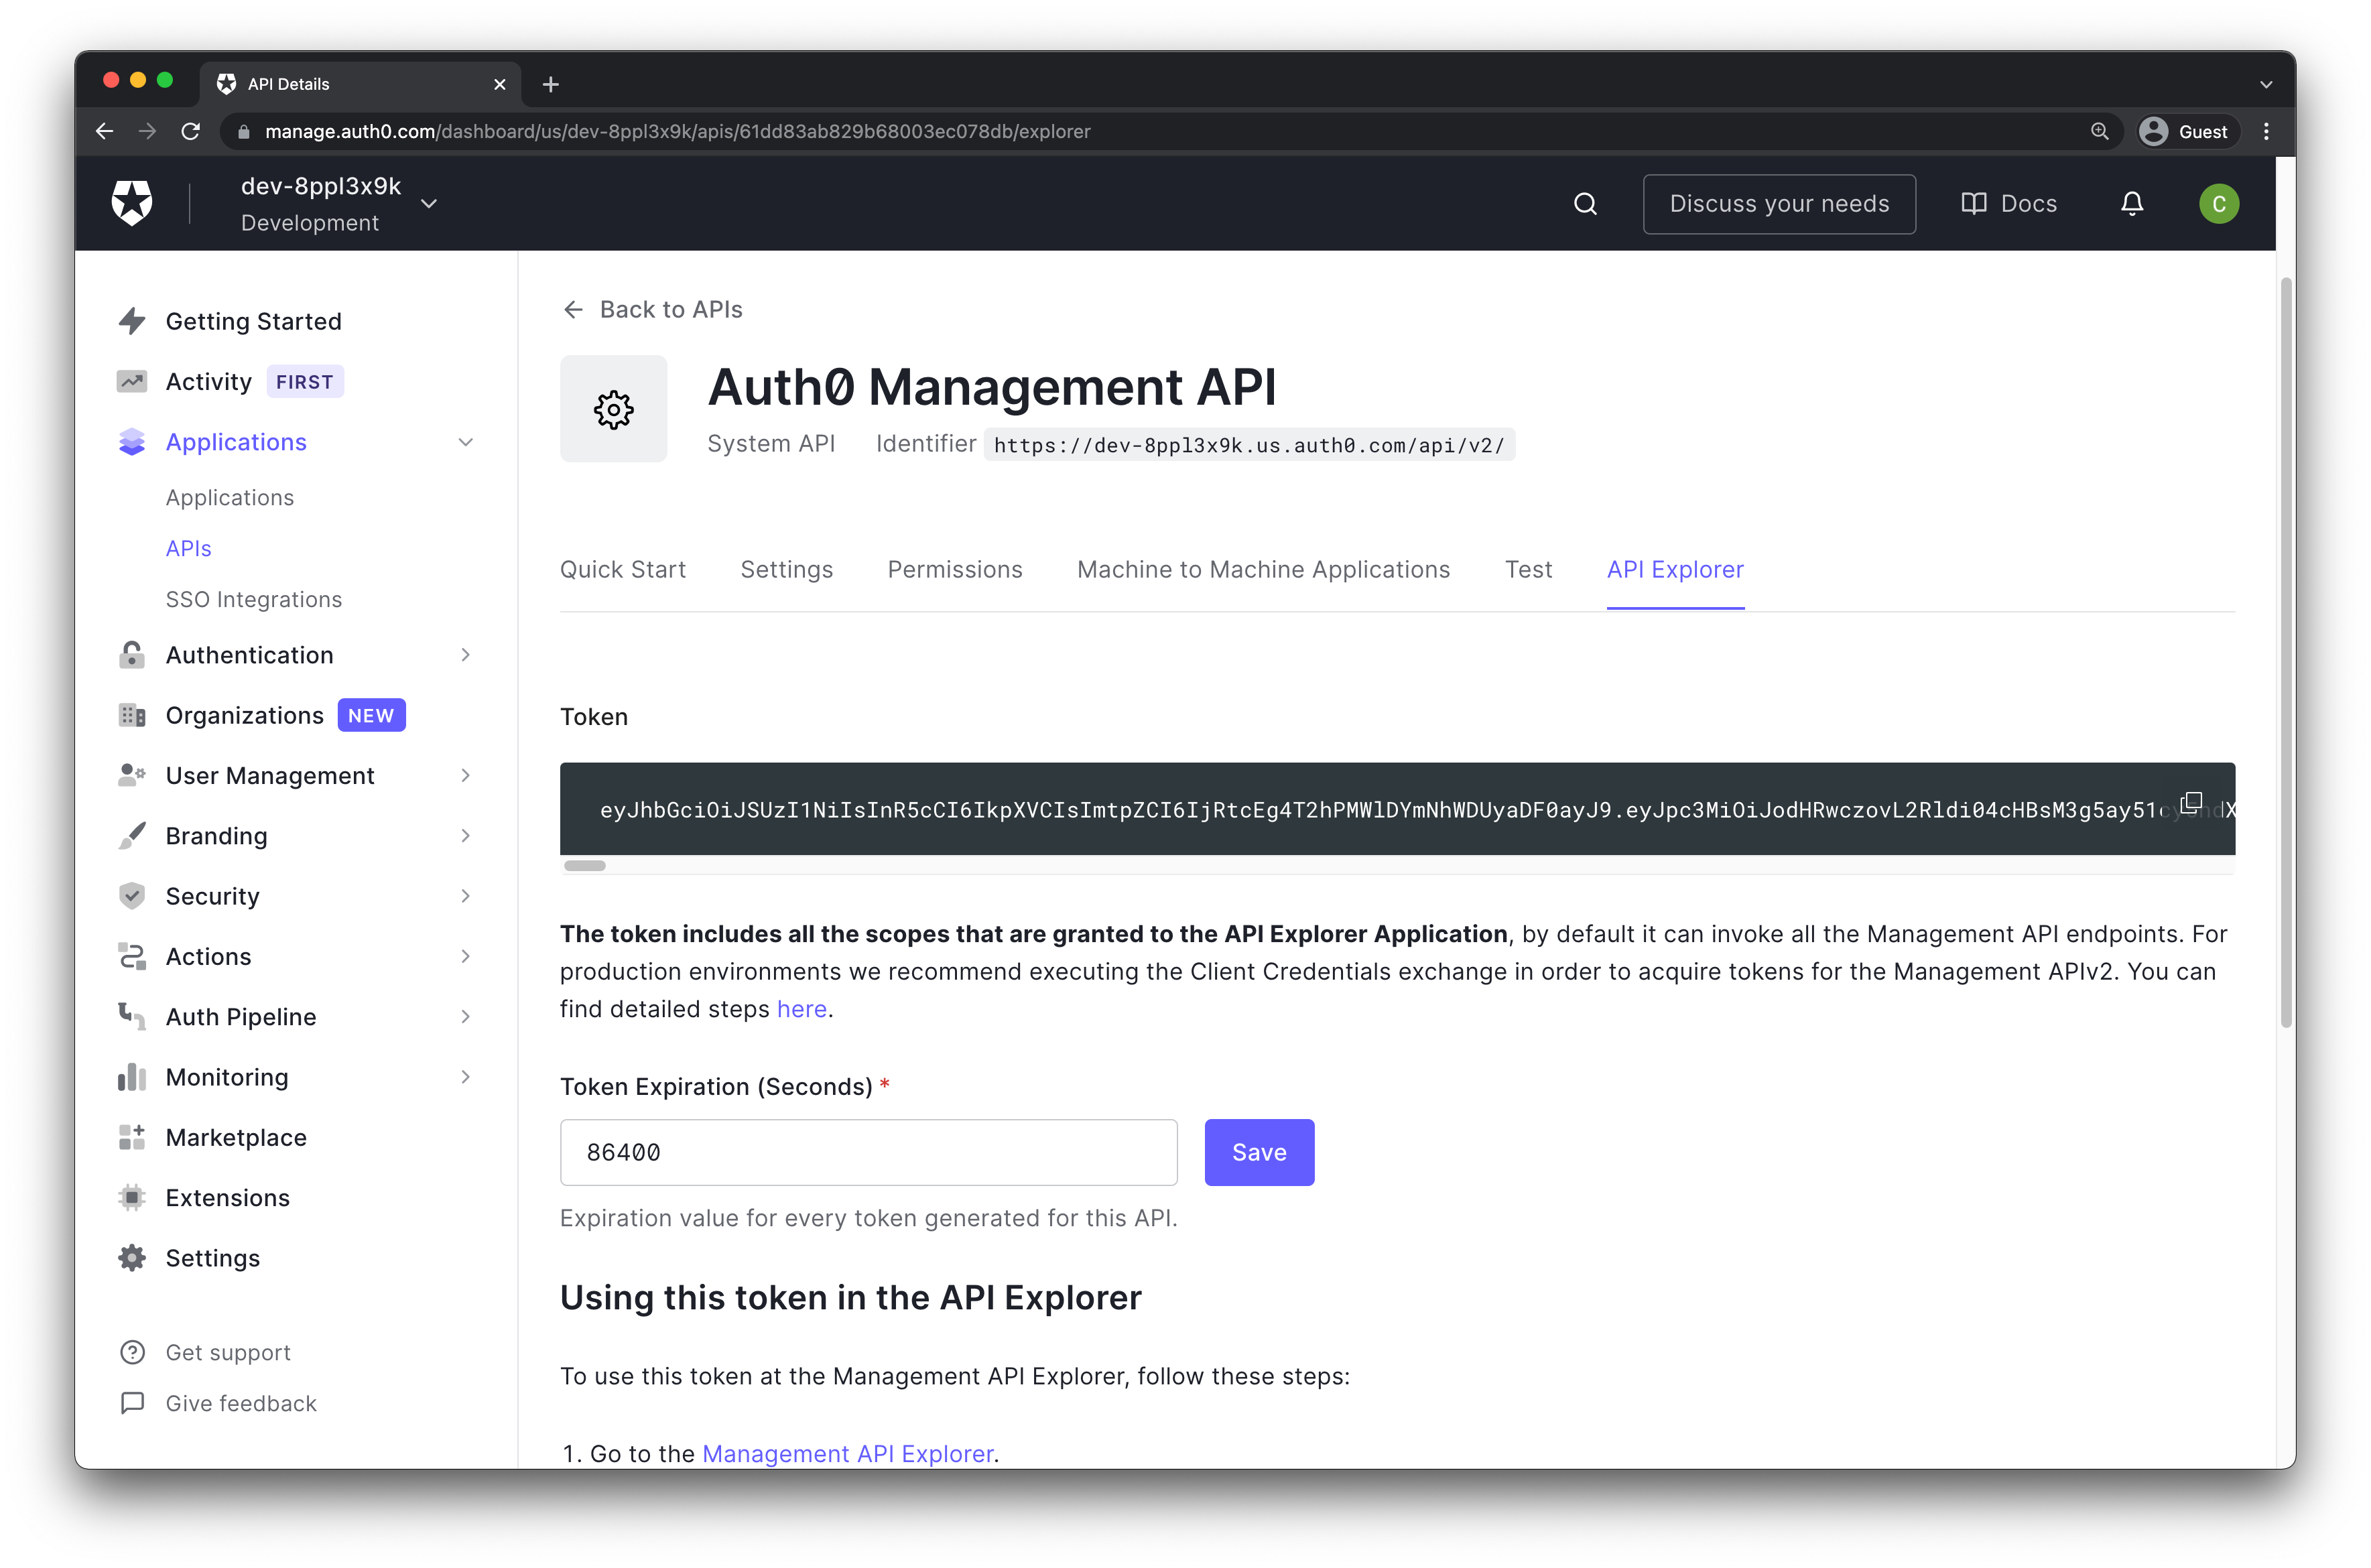 Auth0 Management API